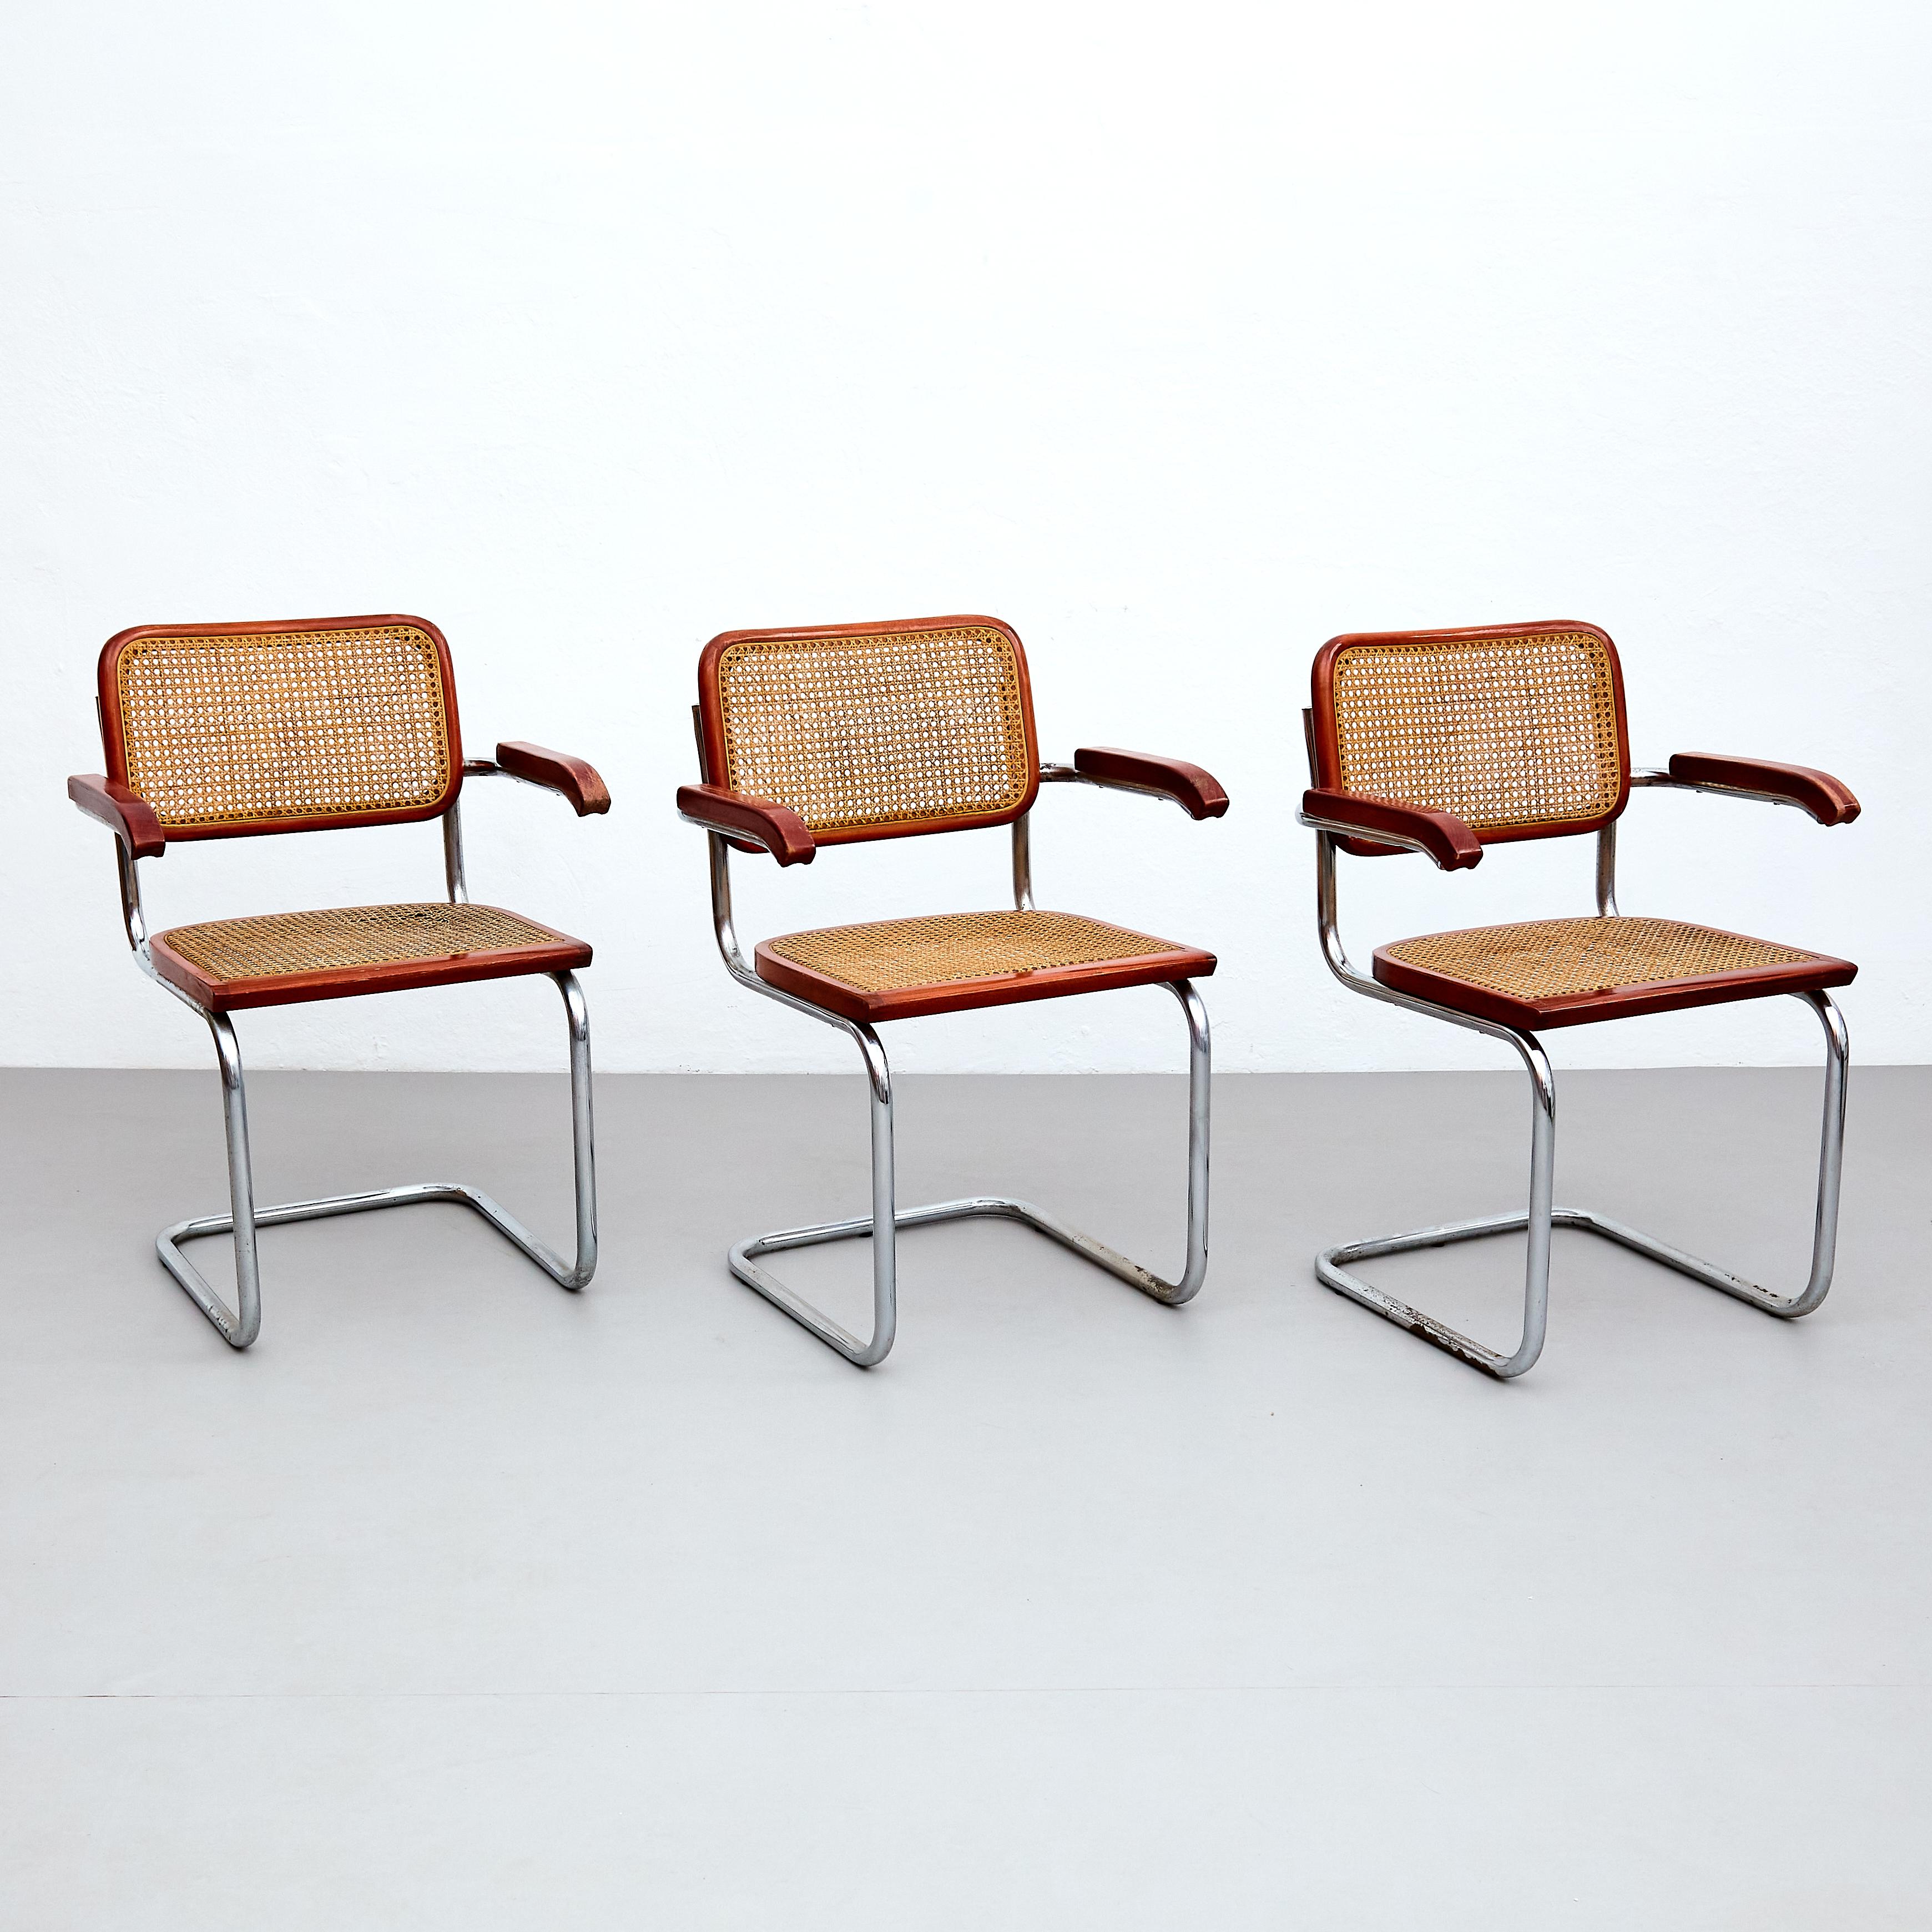 Voici un ensemble exceptionnel de 6 chaises CIRCA, conçues par le célèbre Marcel Breuer et fabriquées en Italie, vers 1960. Ces chaises emblématiques de la modernité du milieu du siècle présentent une parfaite harmonie de matériaux, avec des